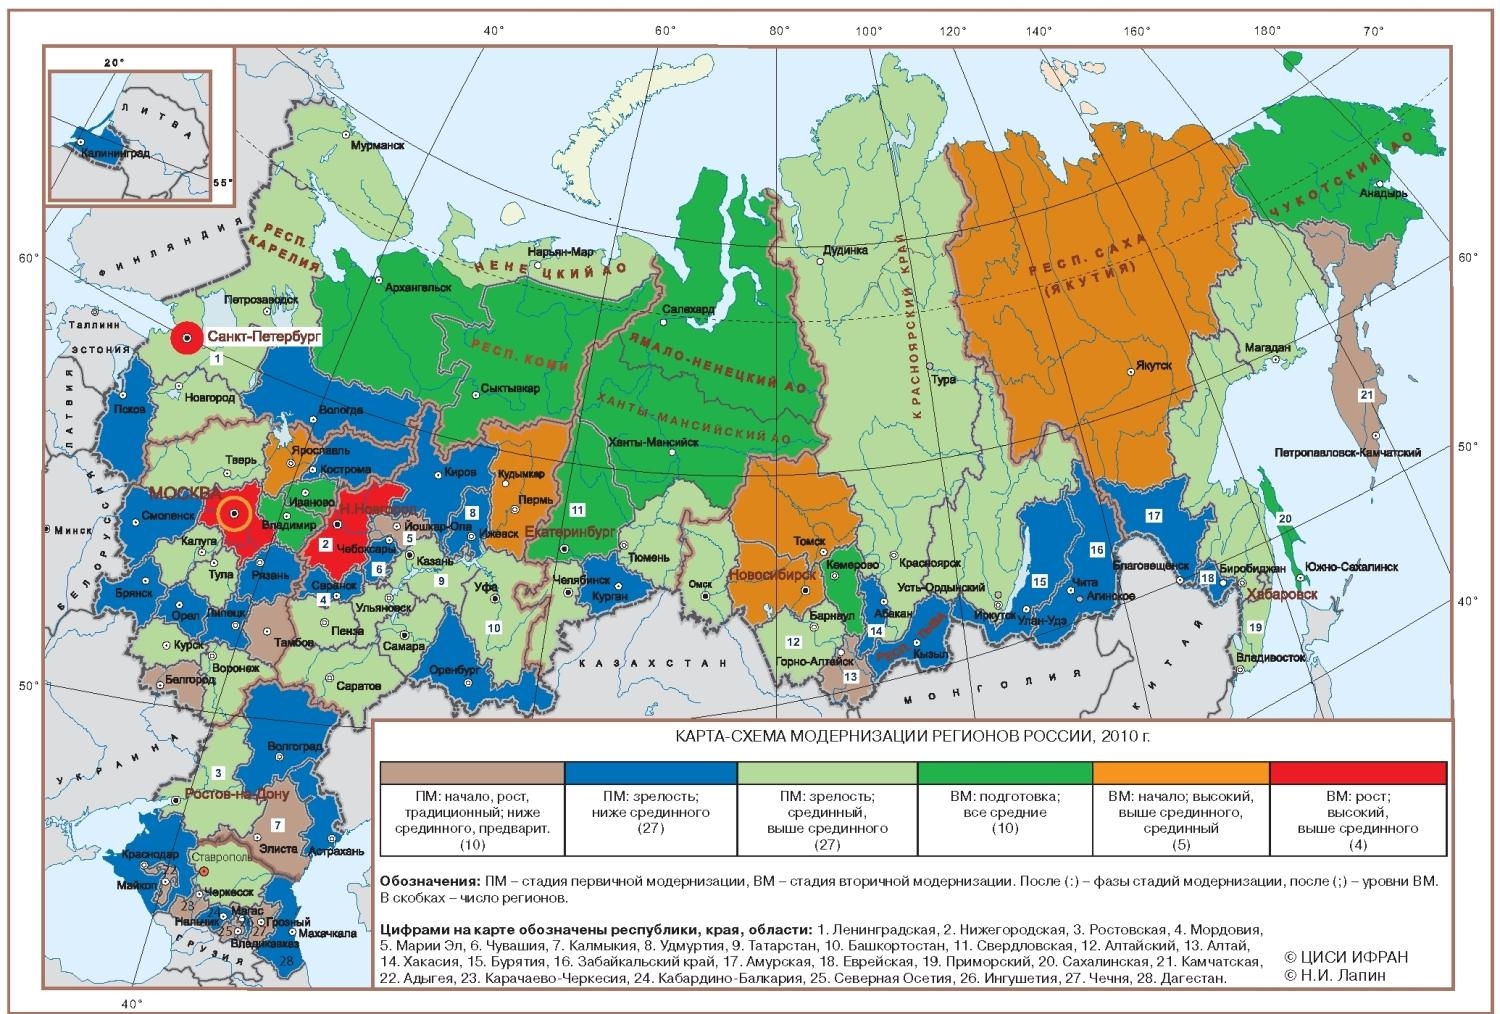 РФ териториальная федерация состоит из субъектов